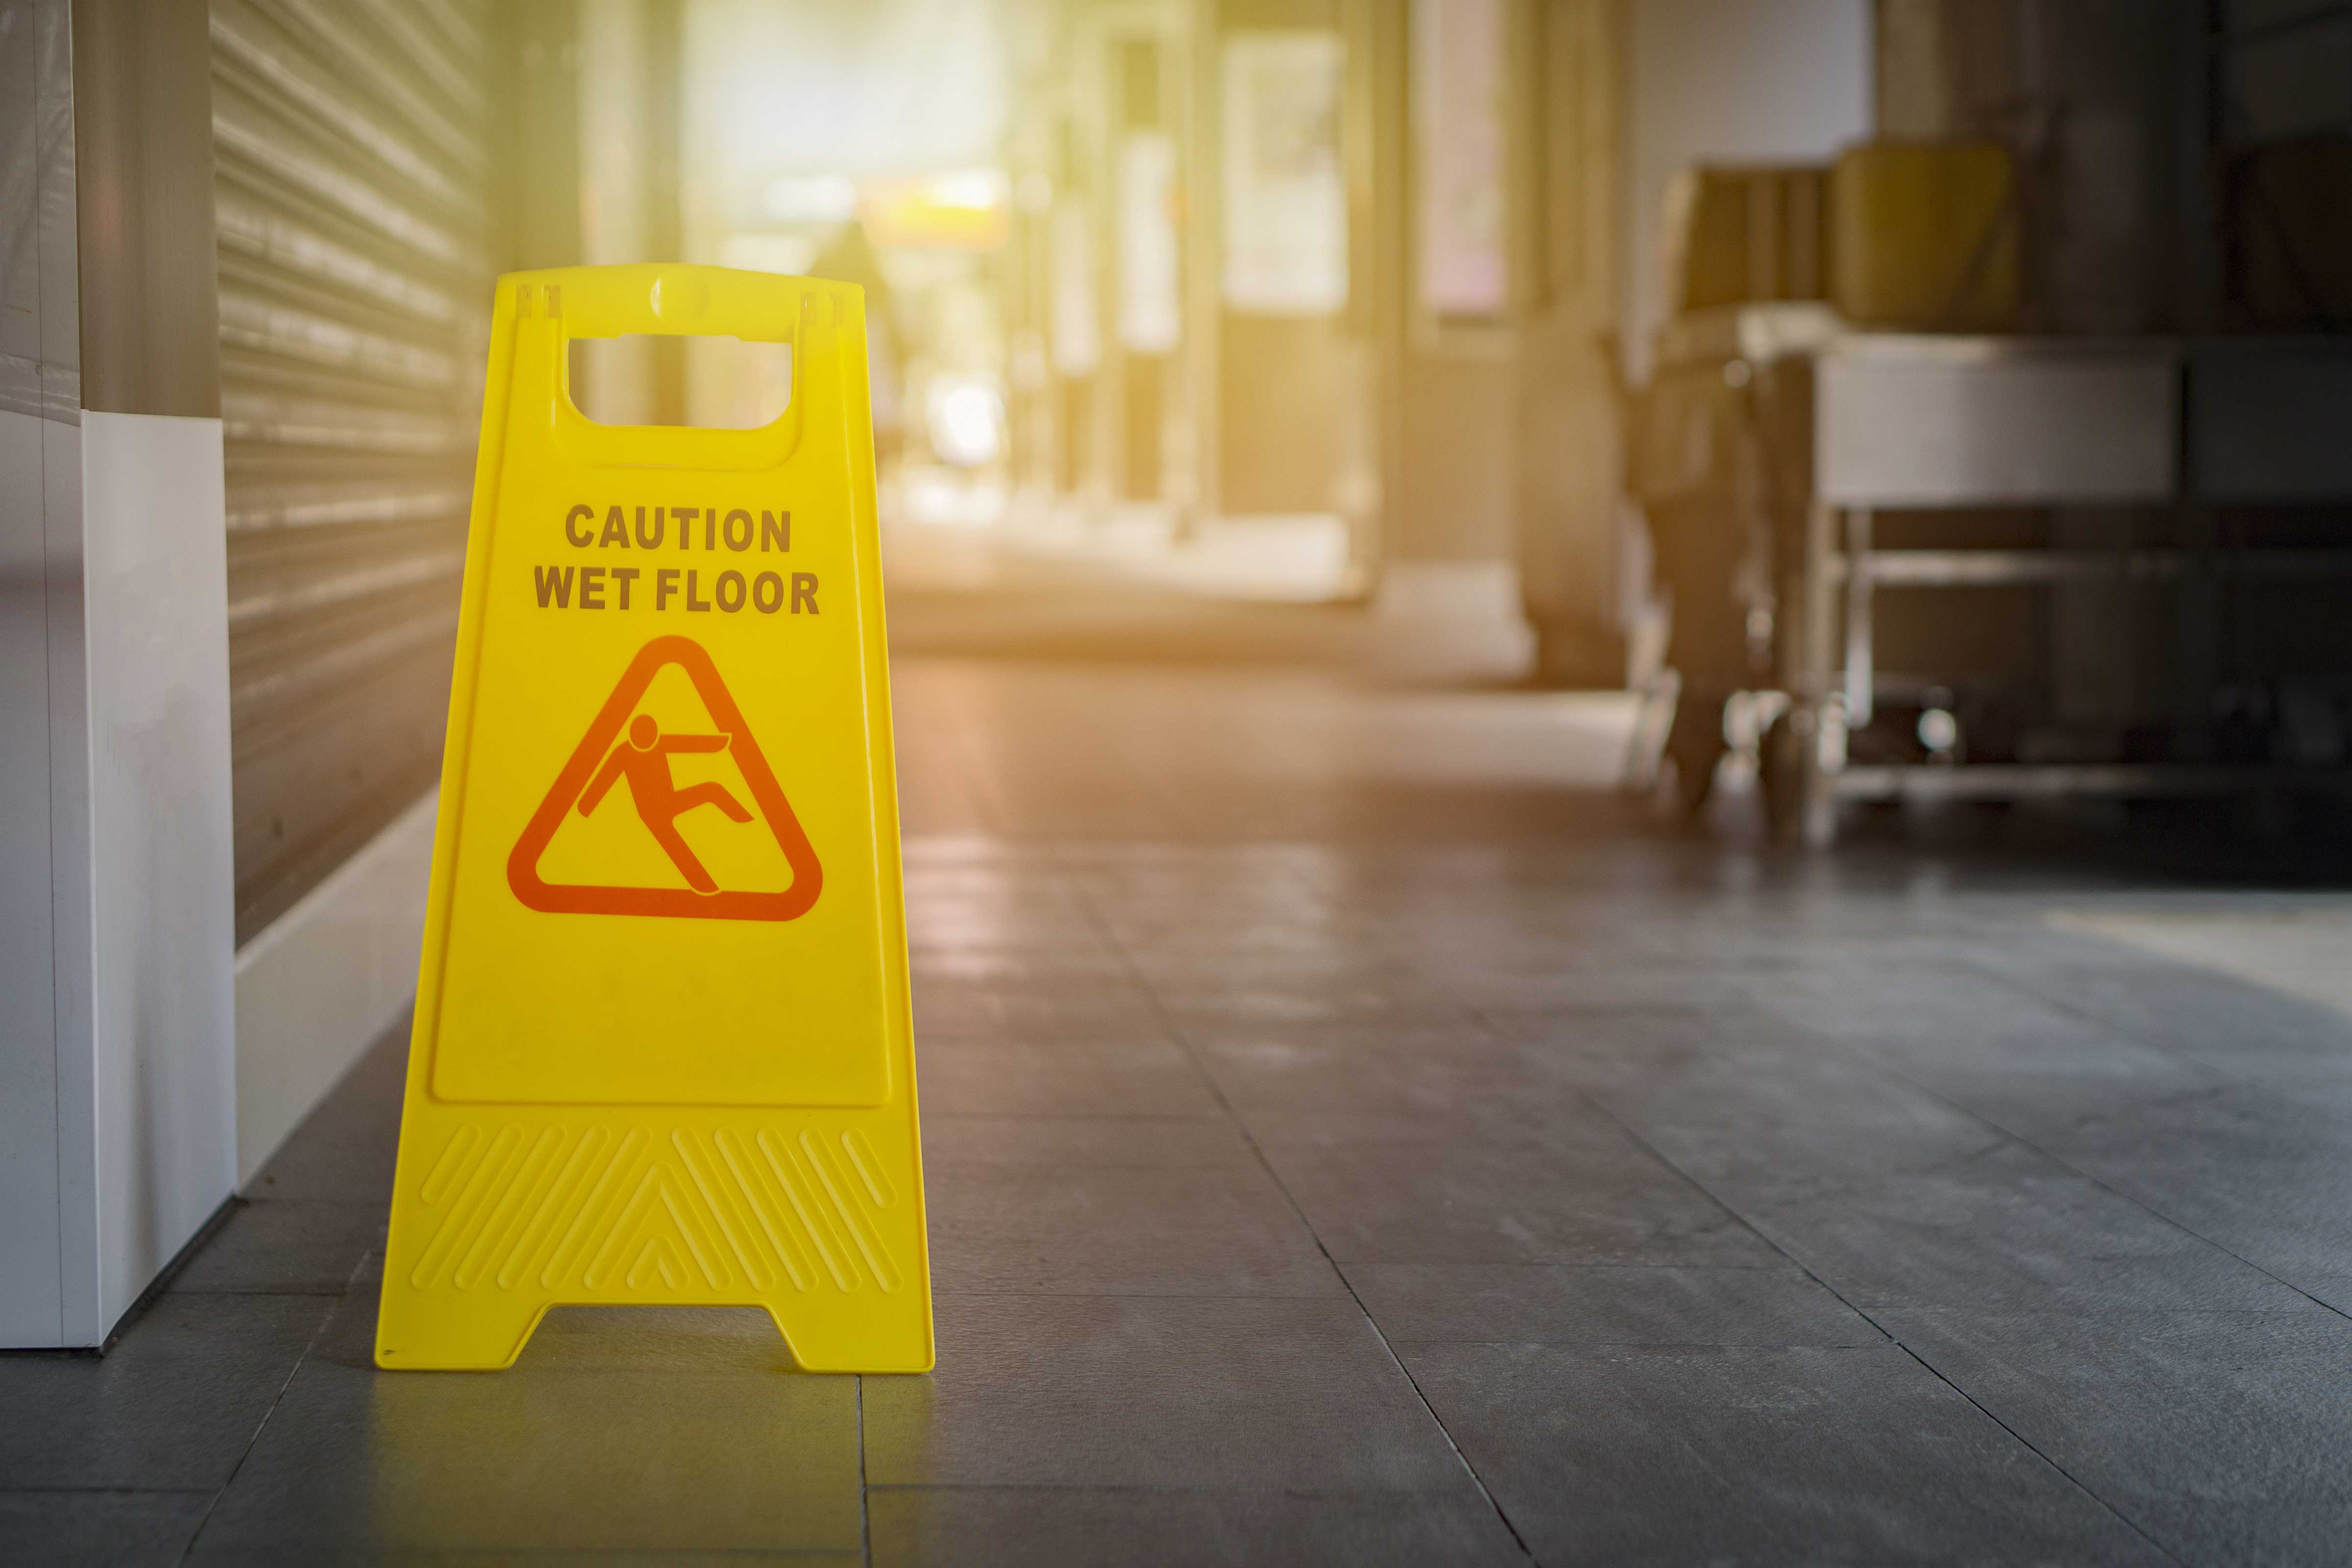 Caution Wet Floor sign on tile floor